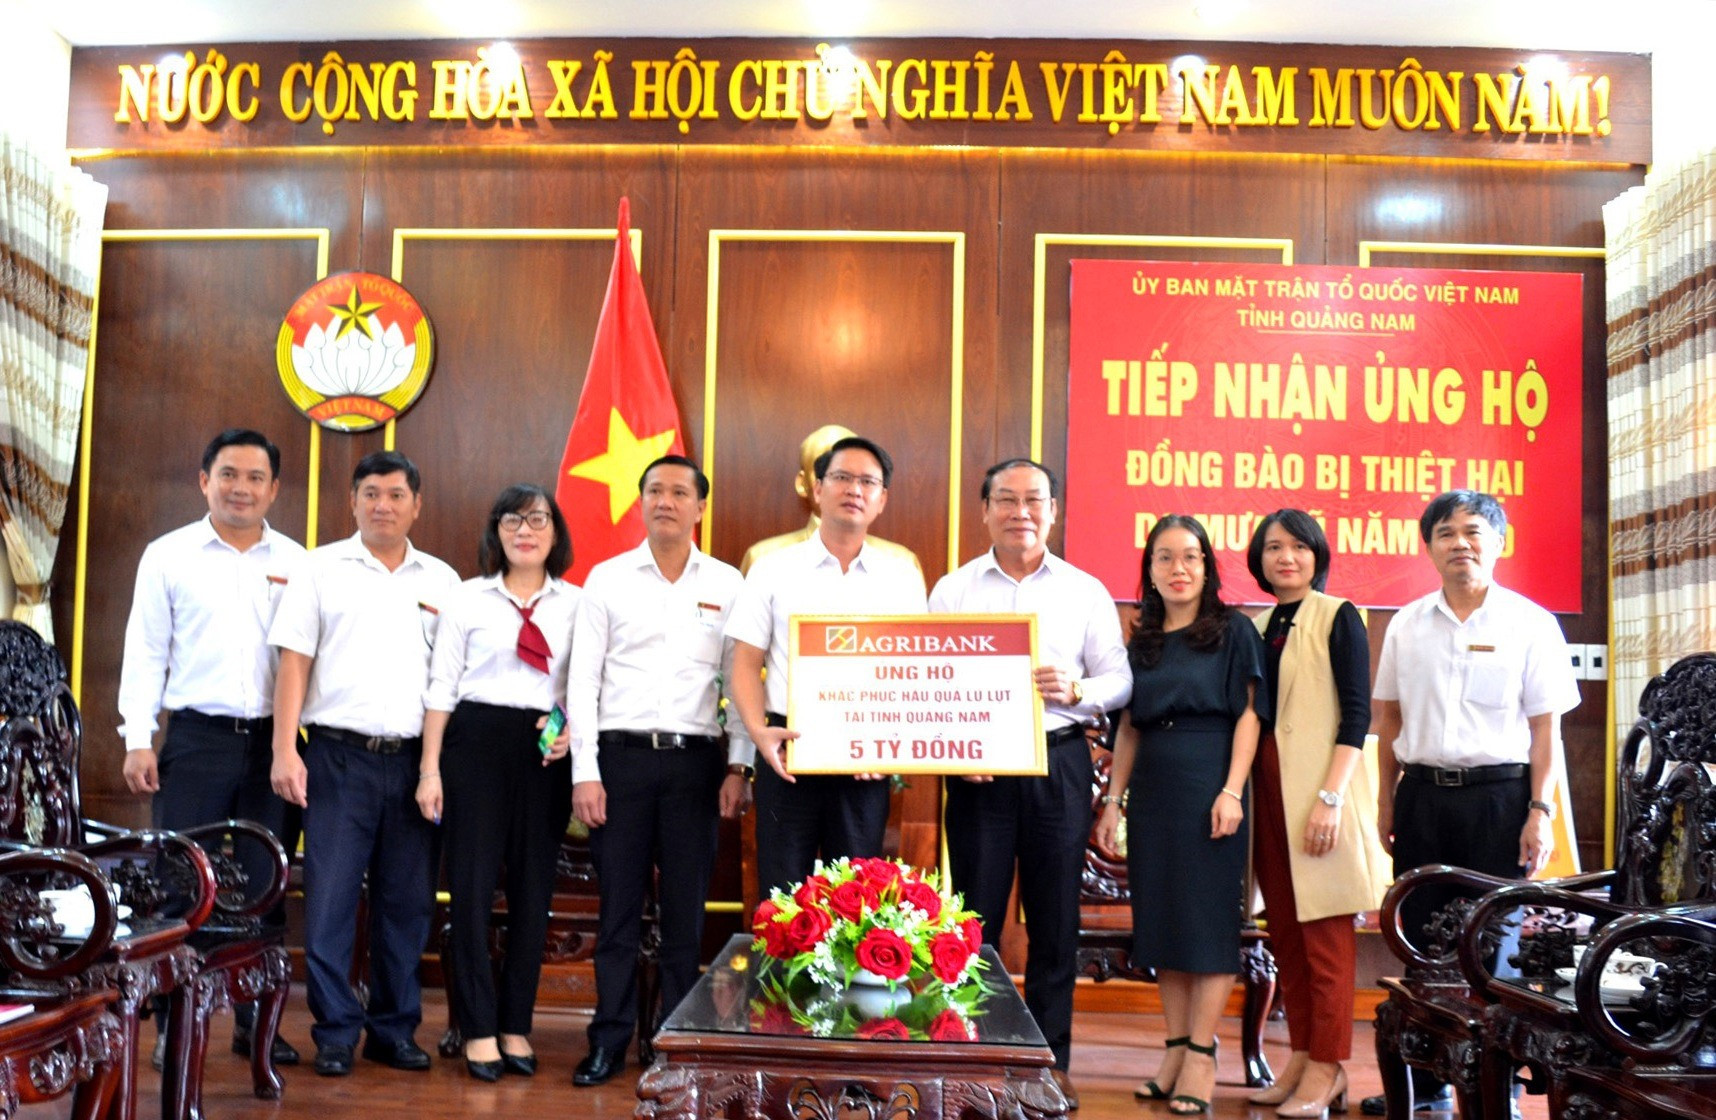 Ông Hà Thạch đã trao 5 tỷ đồng đến ông Võ Xuân Ca để hỗ trợ nhân dân Quảng Nam khắc phục hậu quả của bão lũ. Ảnh: VIỆT NGUYỄN